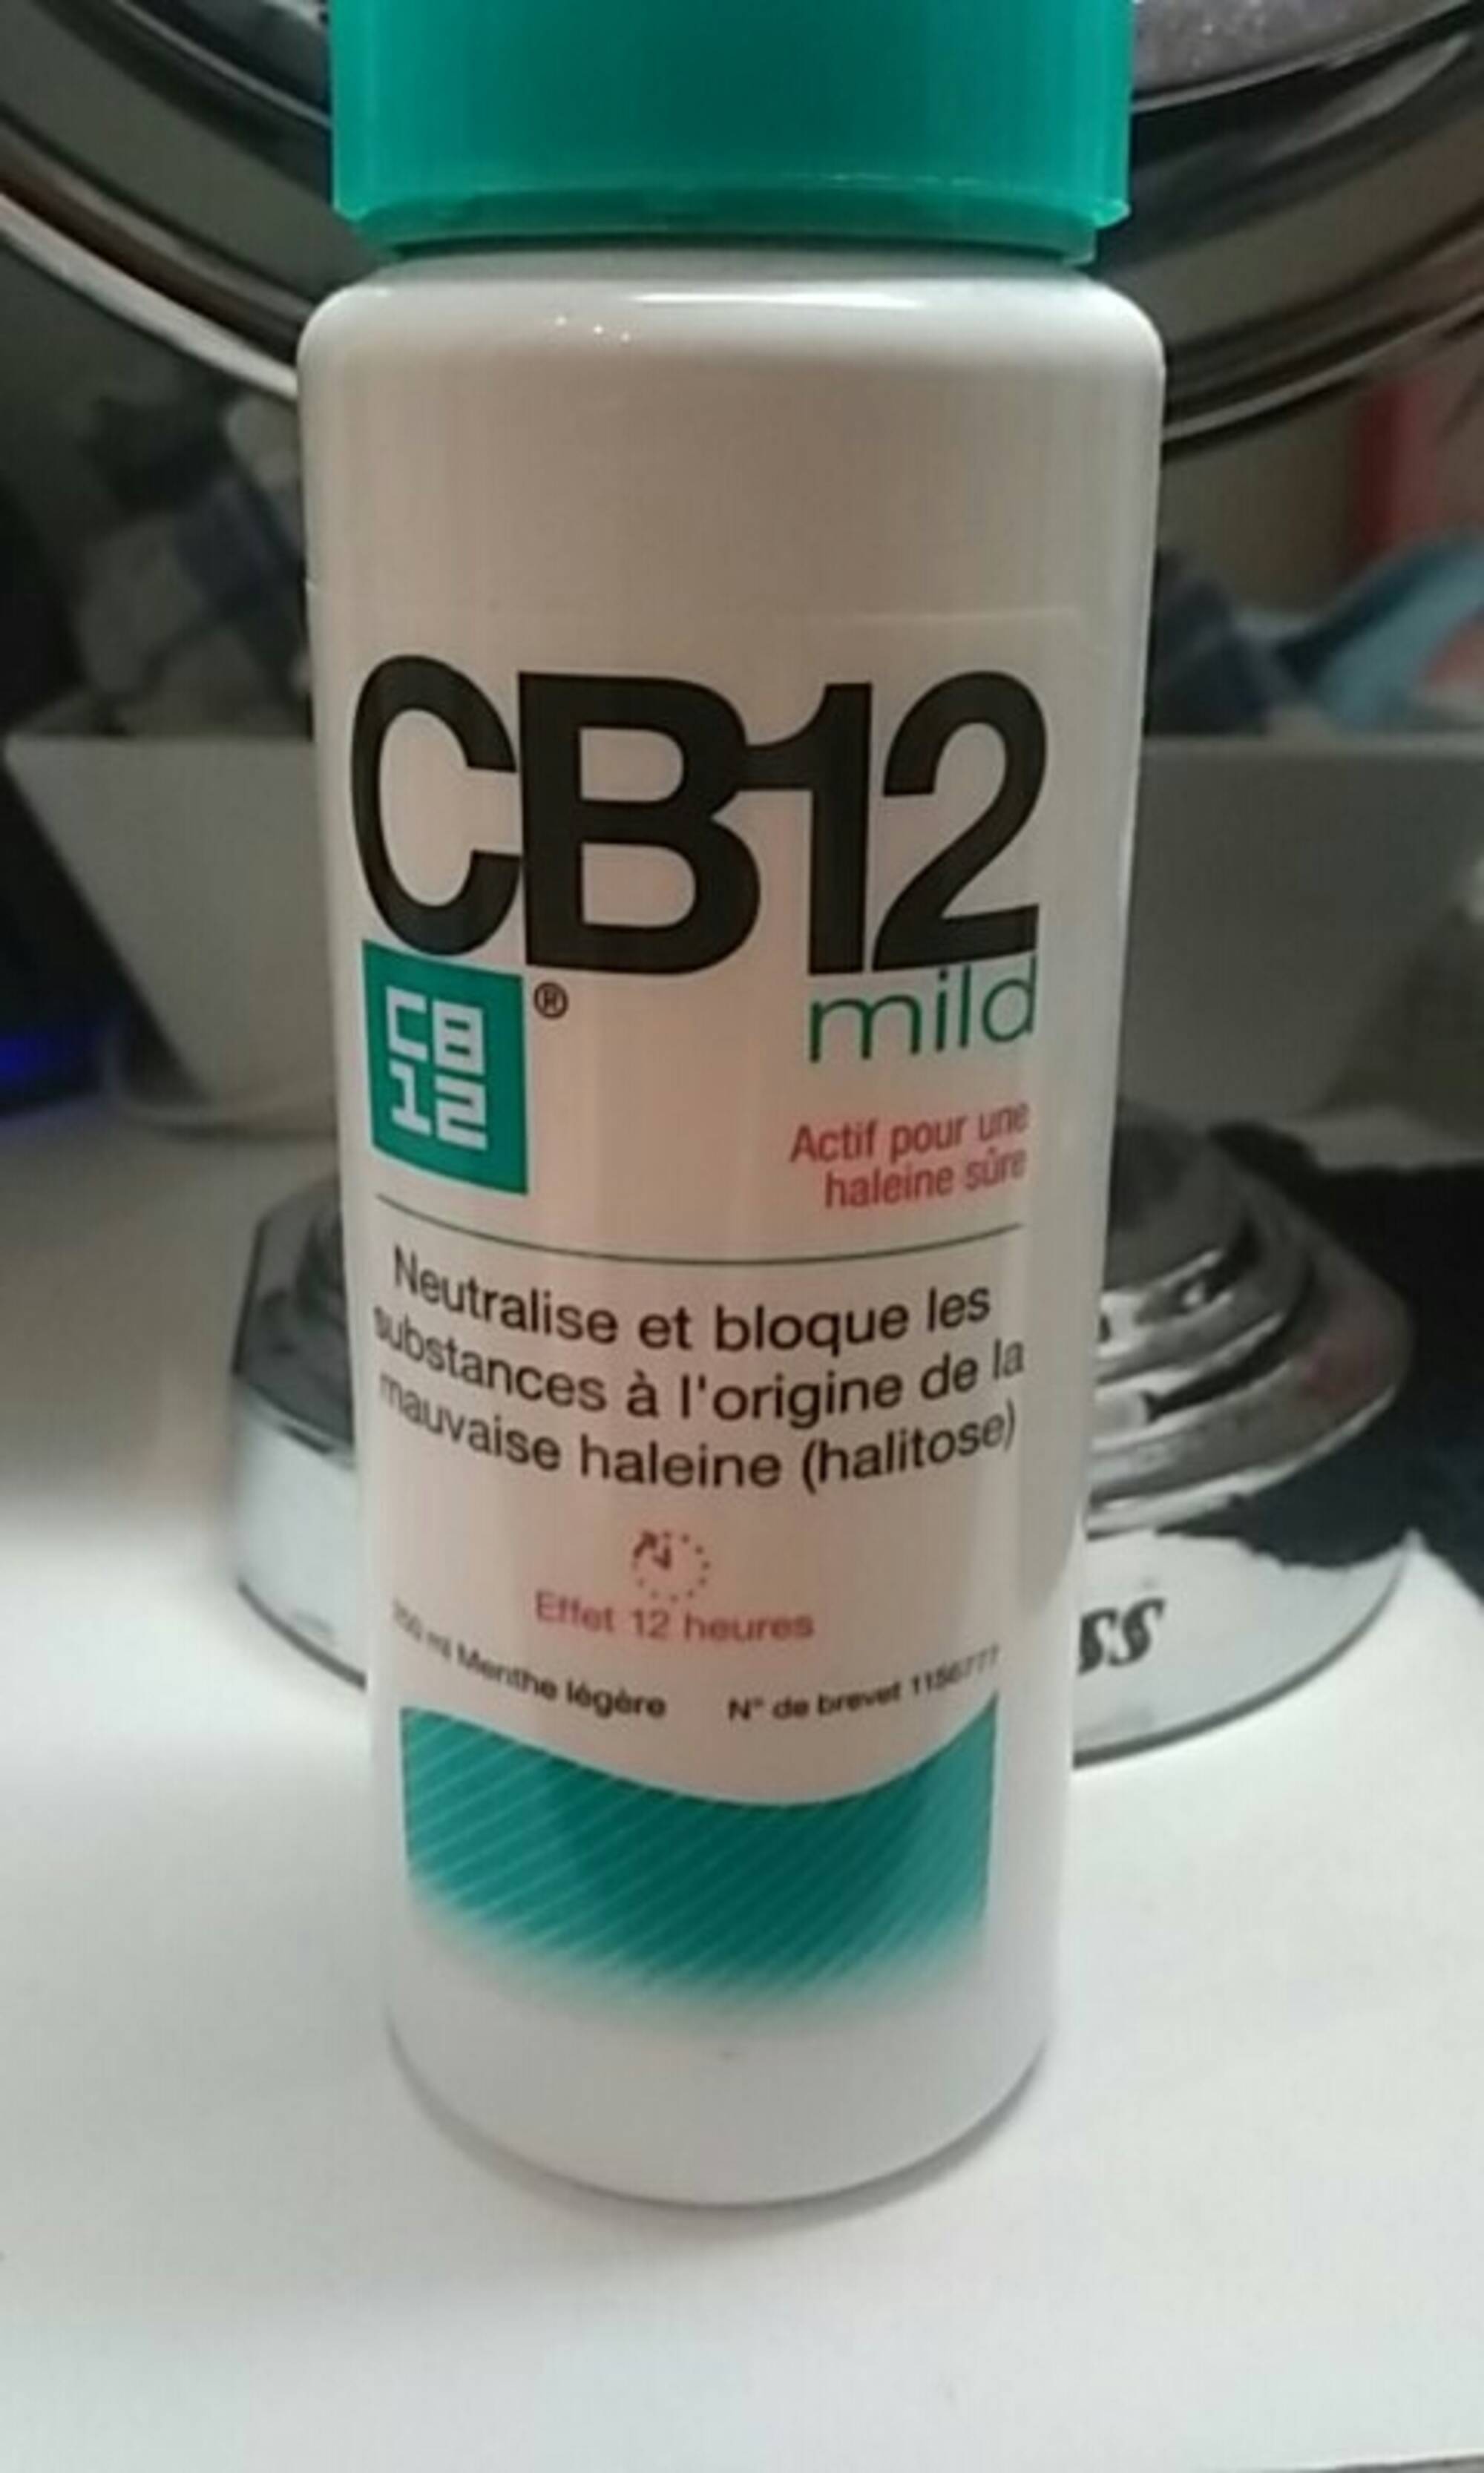 CB12 - CB12 mild actif pour une haleine sûre